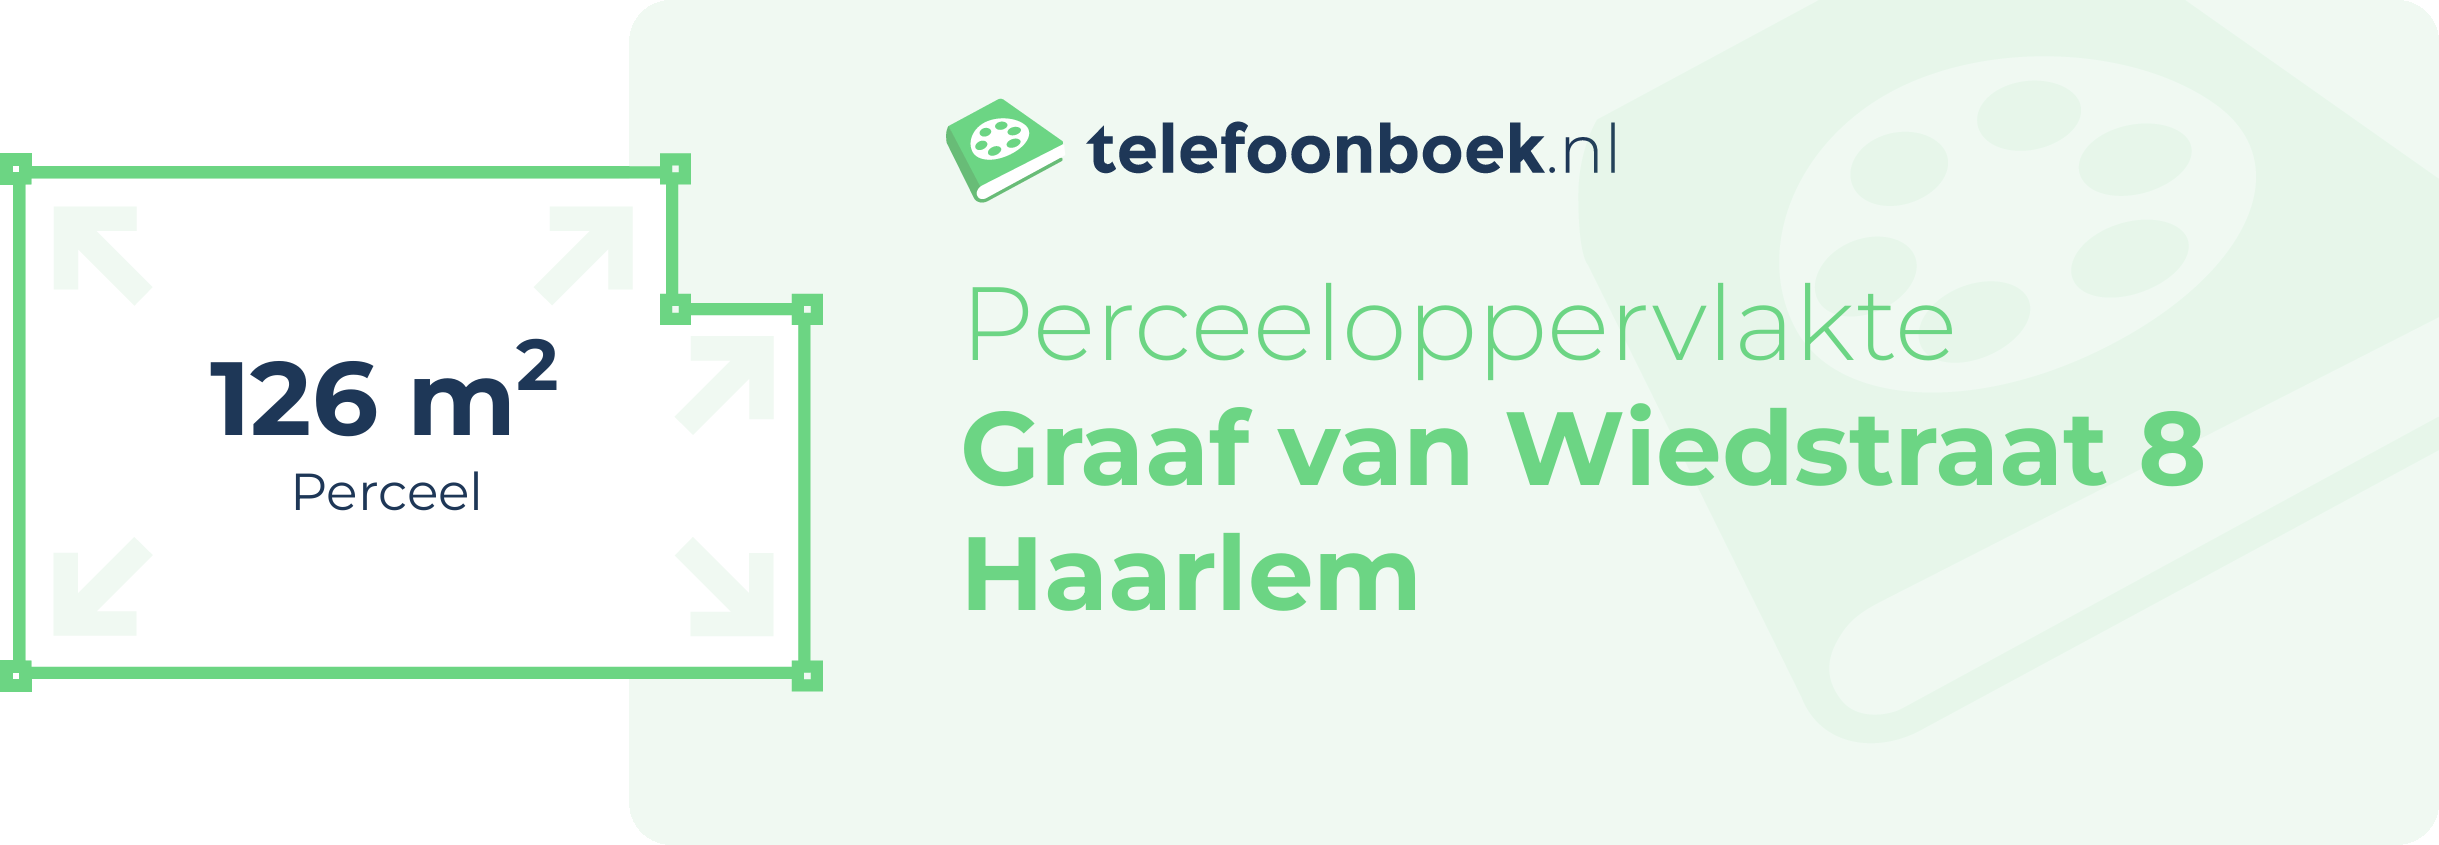 Perceeloppervlakte Graaf Van Wiedstraat 8 Haarlem